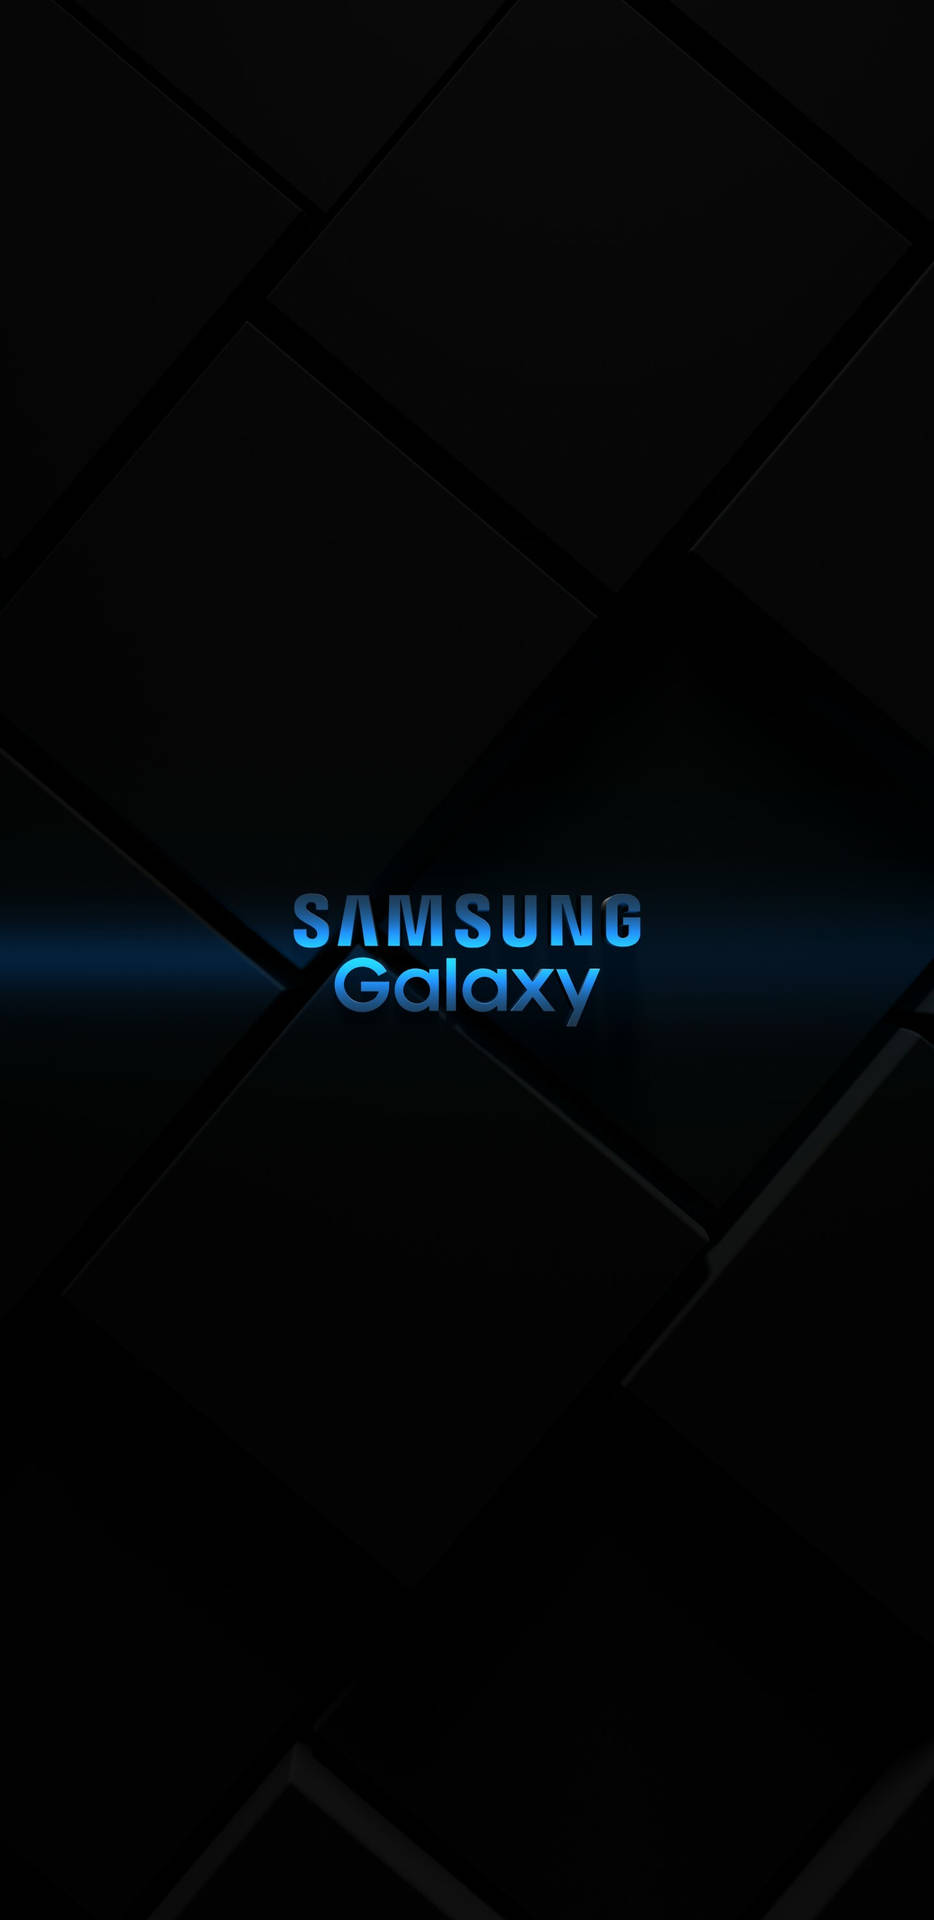 Samsung Galaxy 4k Samsung Galaxy Logo Background